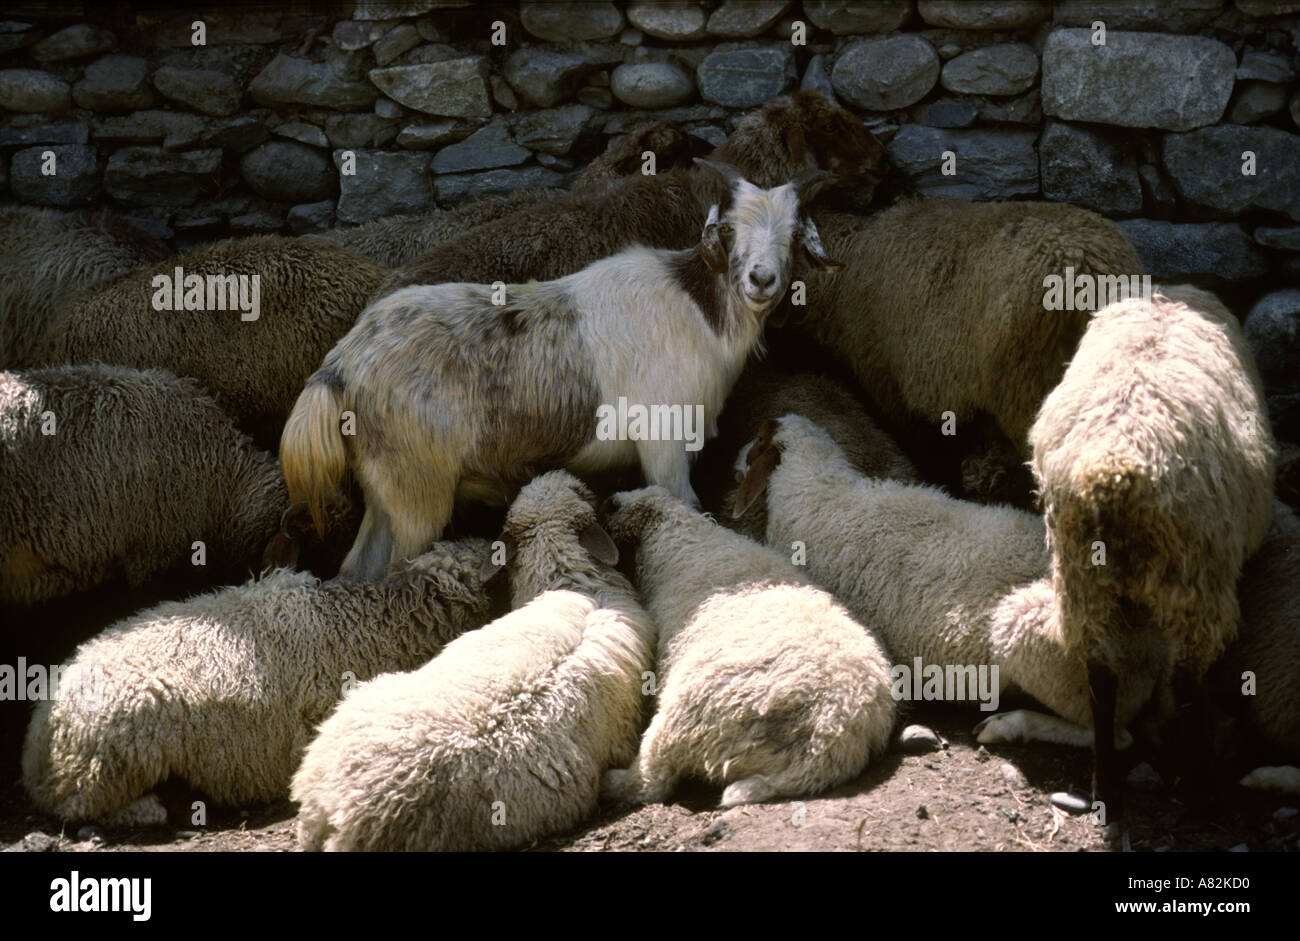 Pakistan Azad Kashmir Gilgit food sheep and goats awaiting slaughter Stock Photo